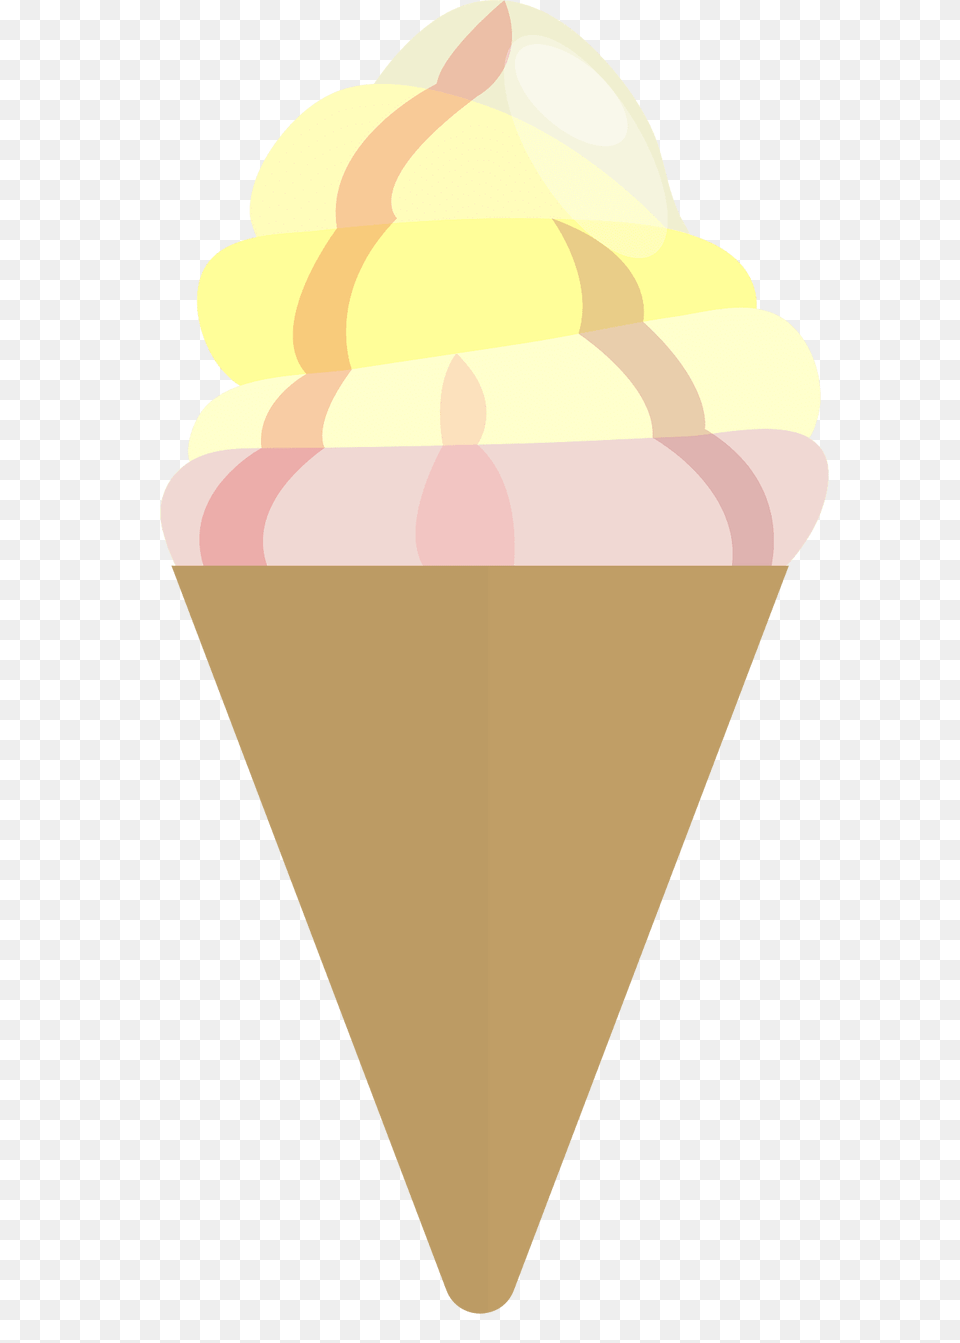 Icecream Clipart, Cream, Dessert, Food, Ice Cream Free Png